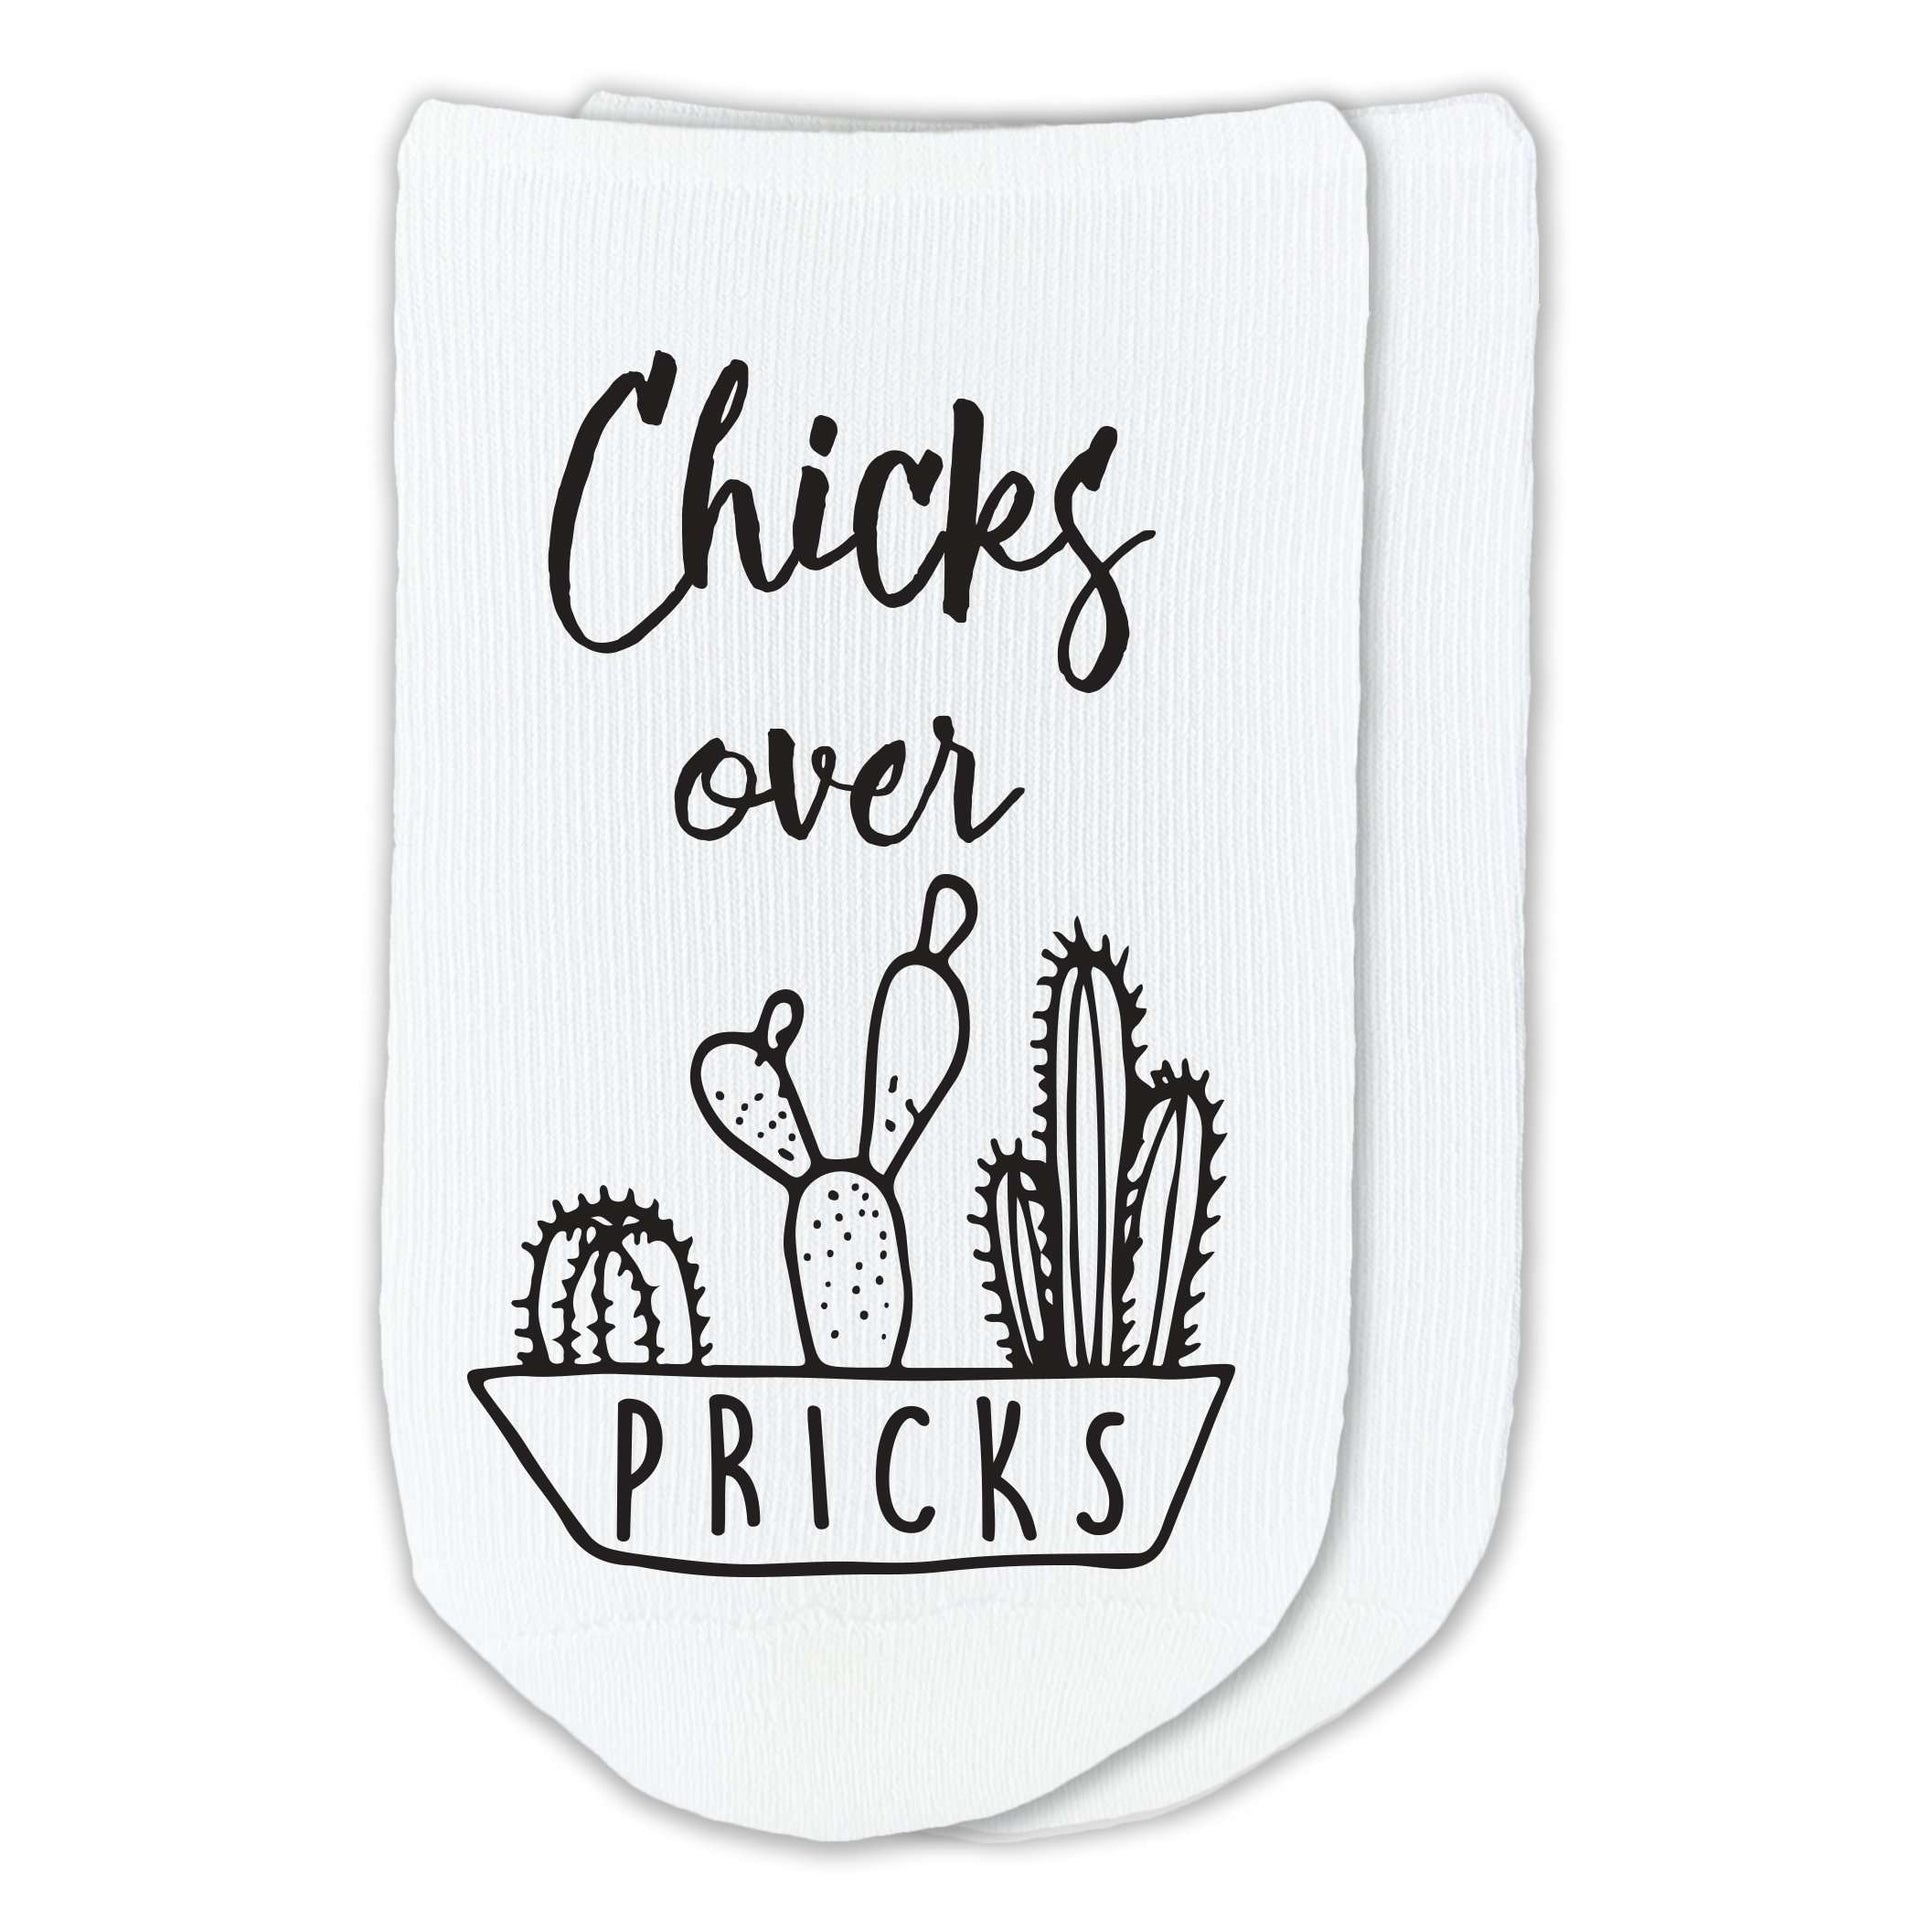 Chicks over pricks design digitally printed on no comfy cotton show socks.